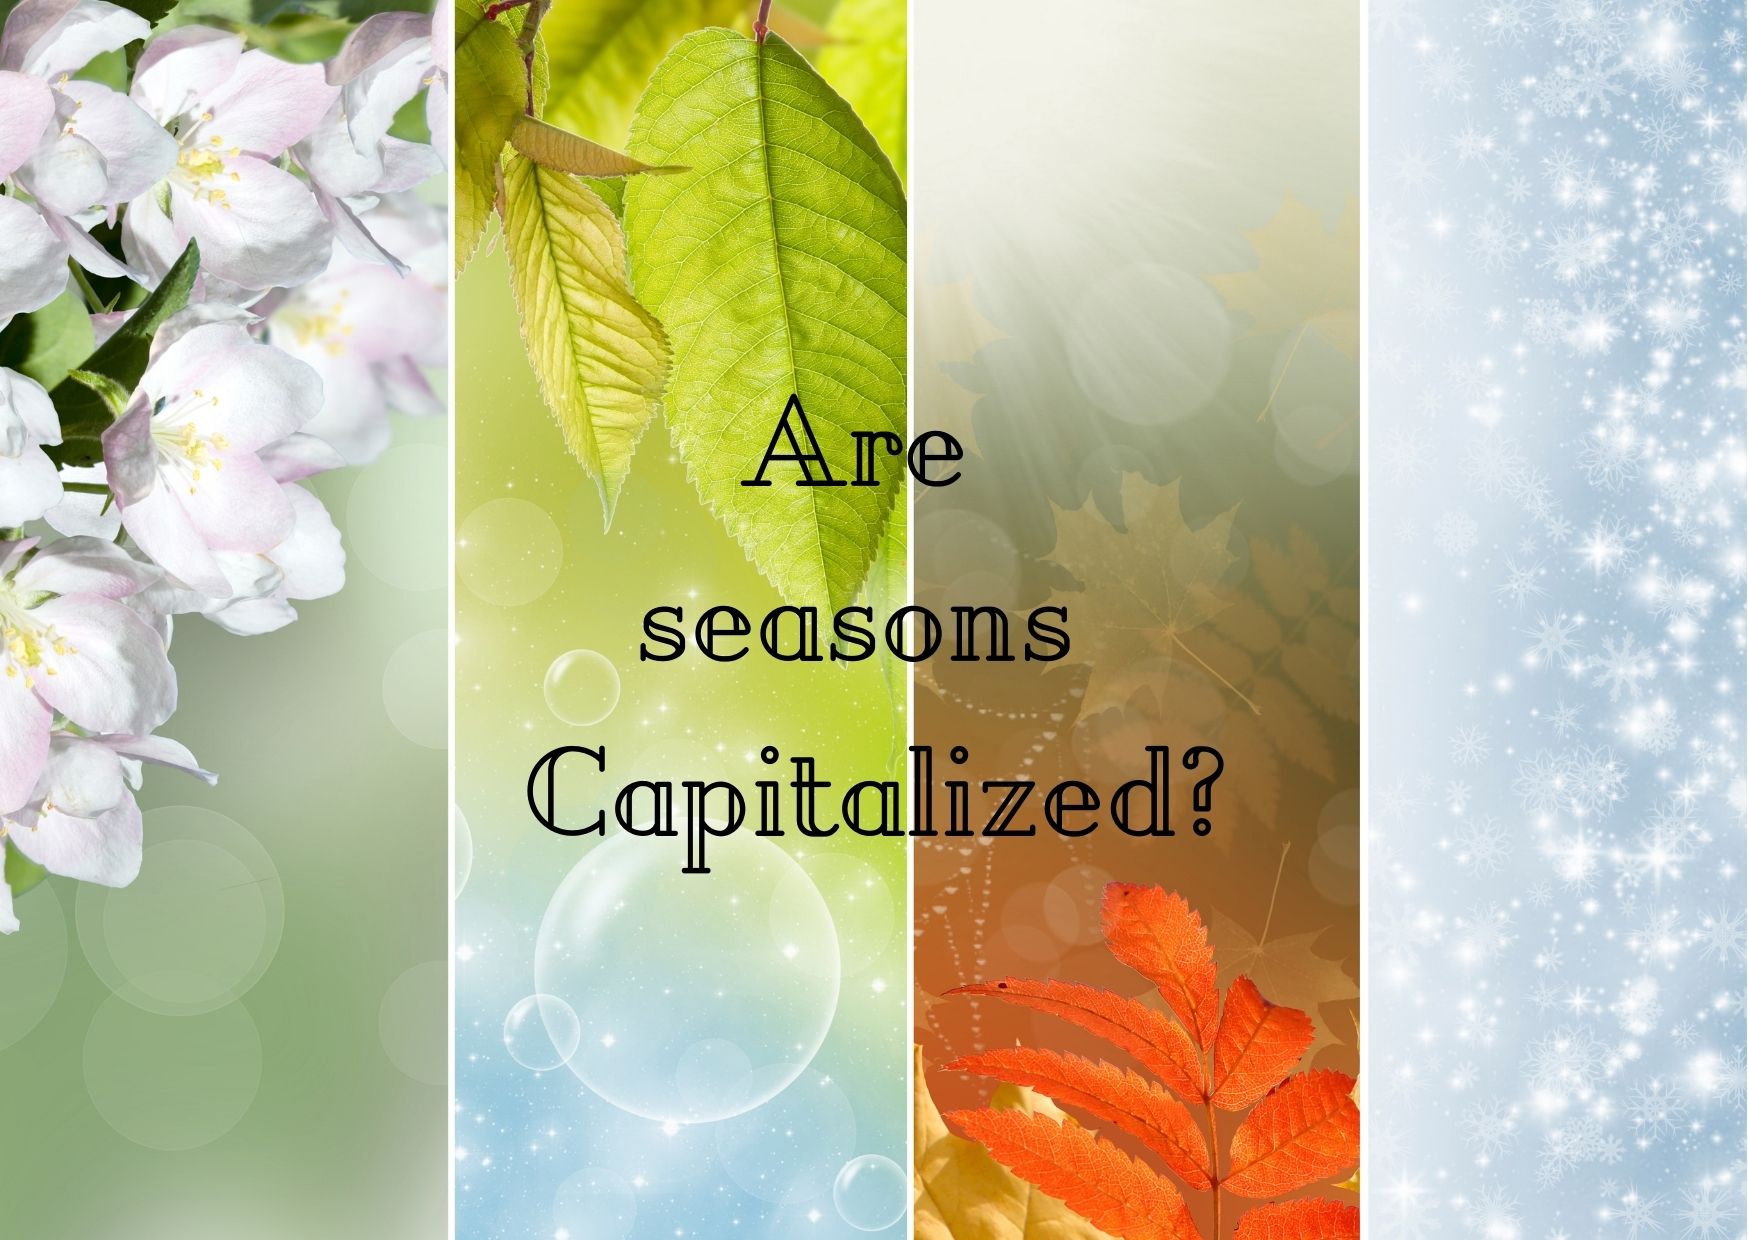 Are seasons capitalised?